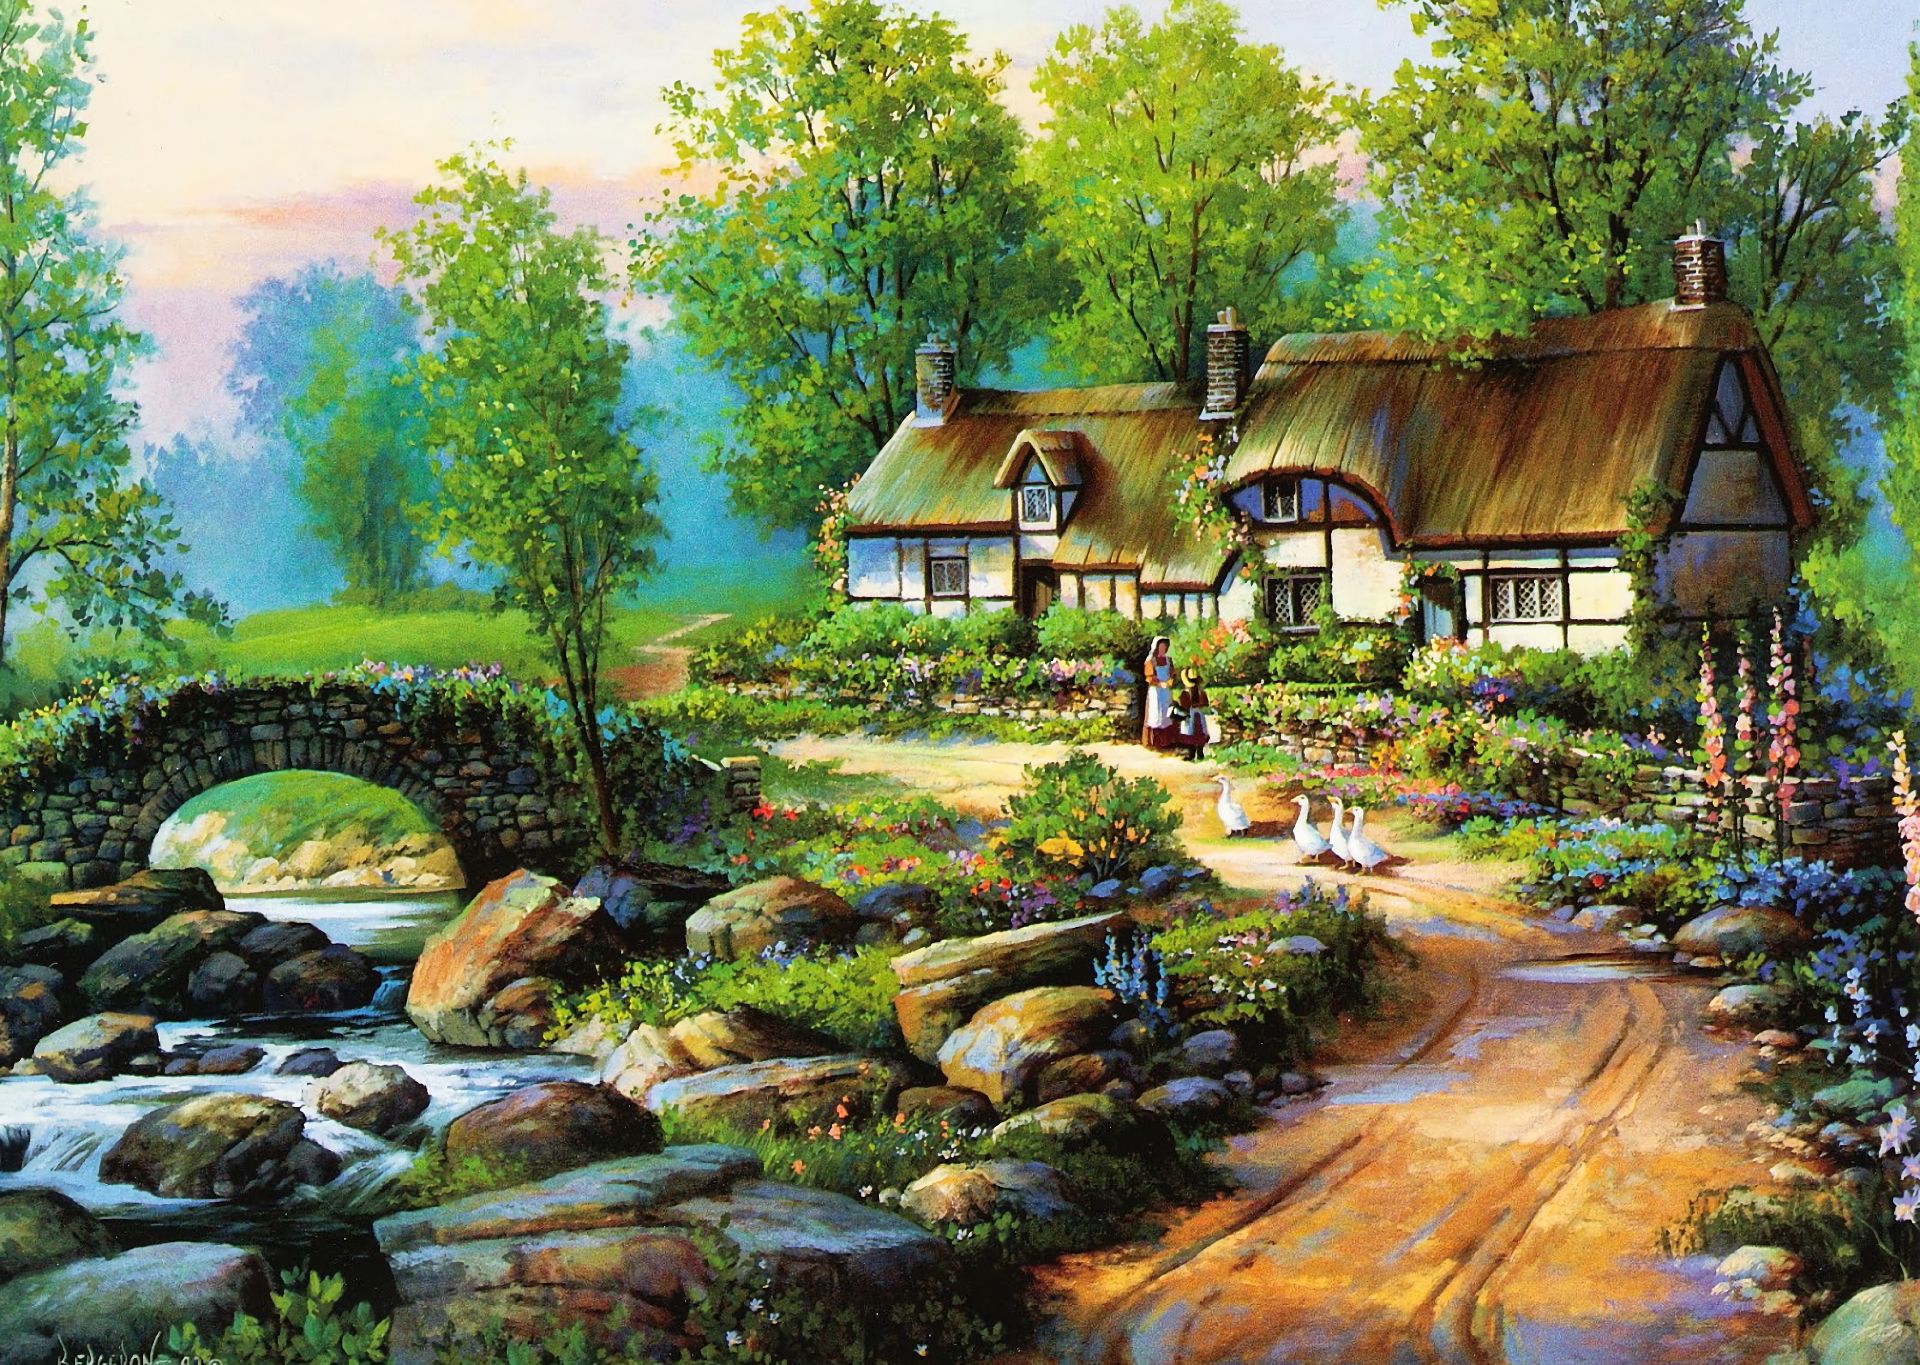 cottage, spring, artistic, painting, bridge, flower, goose, landscape, river, vintage